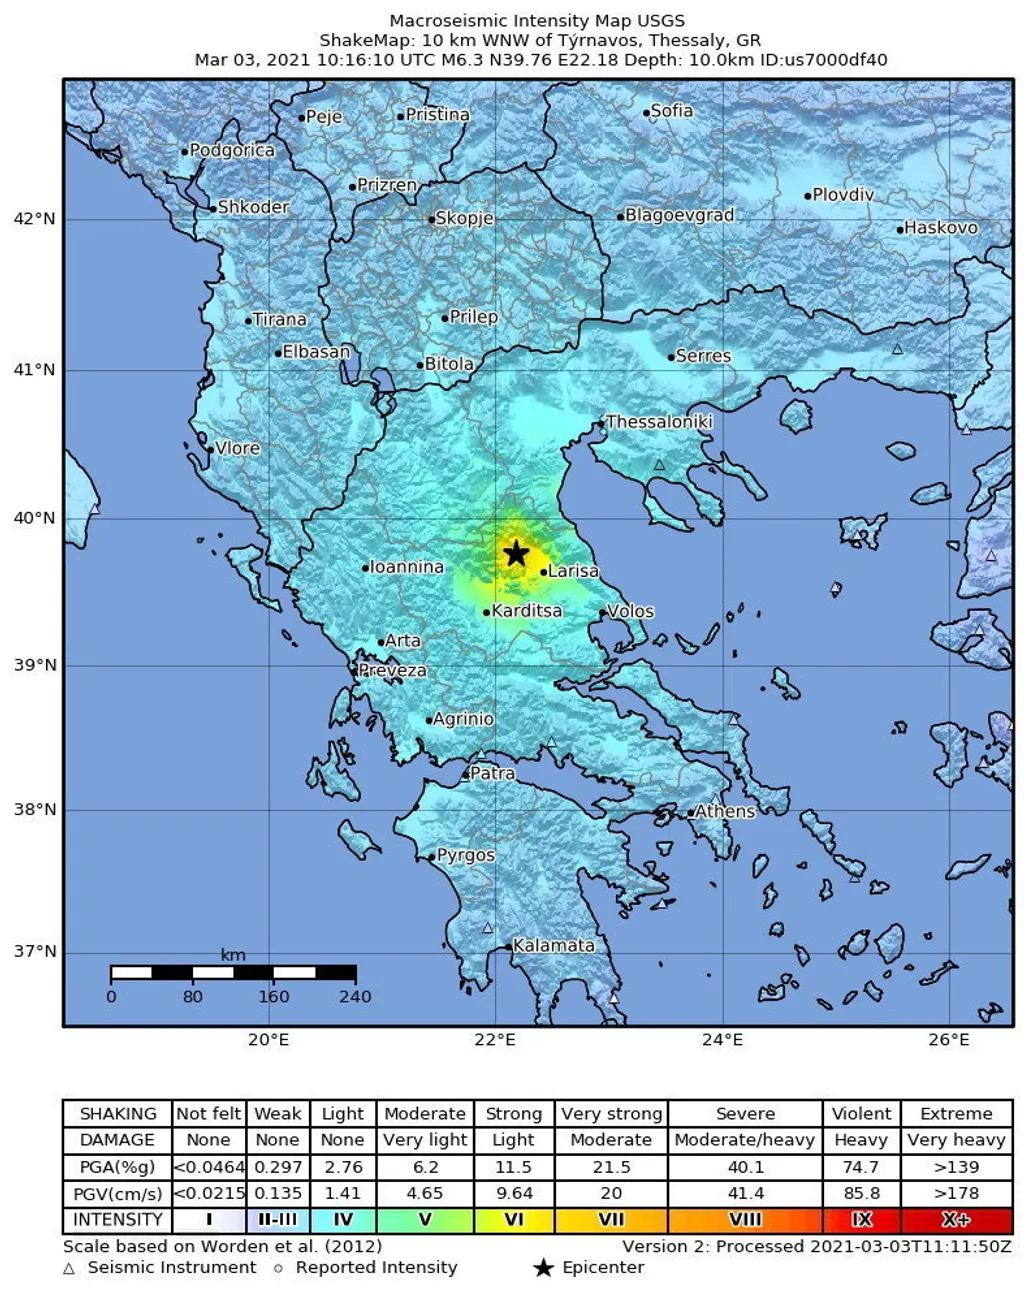 Földrengés Görögországban, galéria, 2021.03.04. 